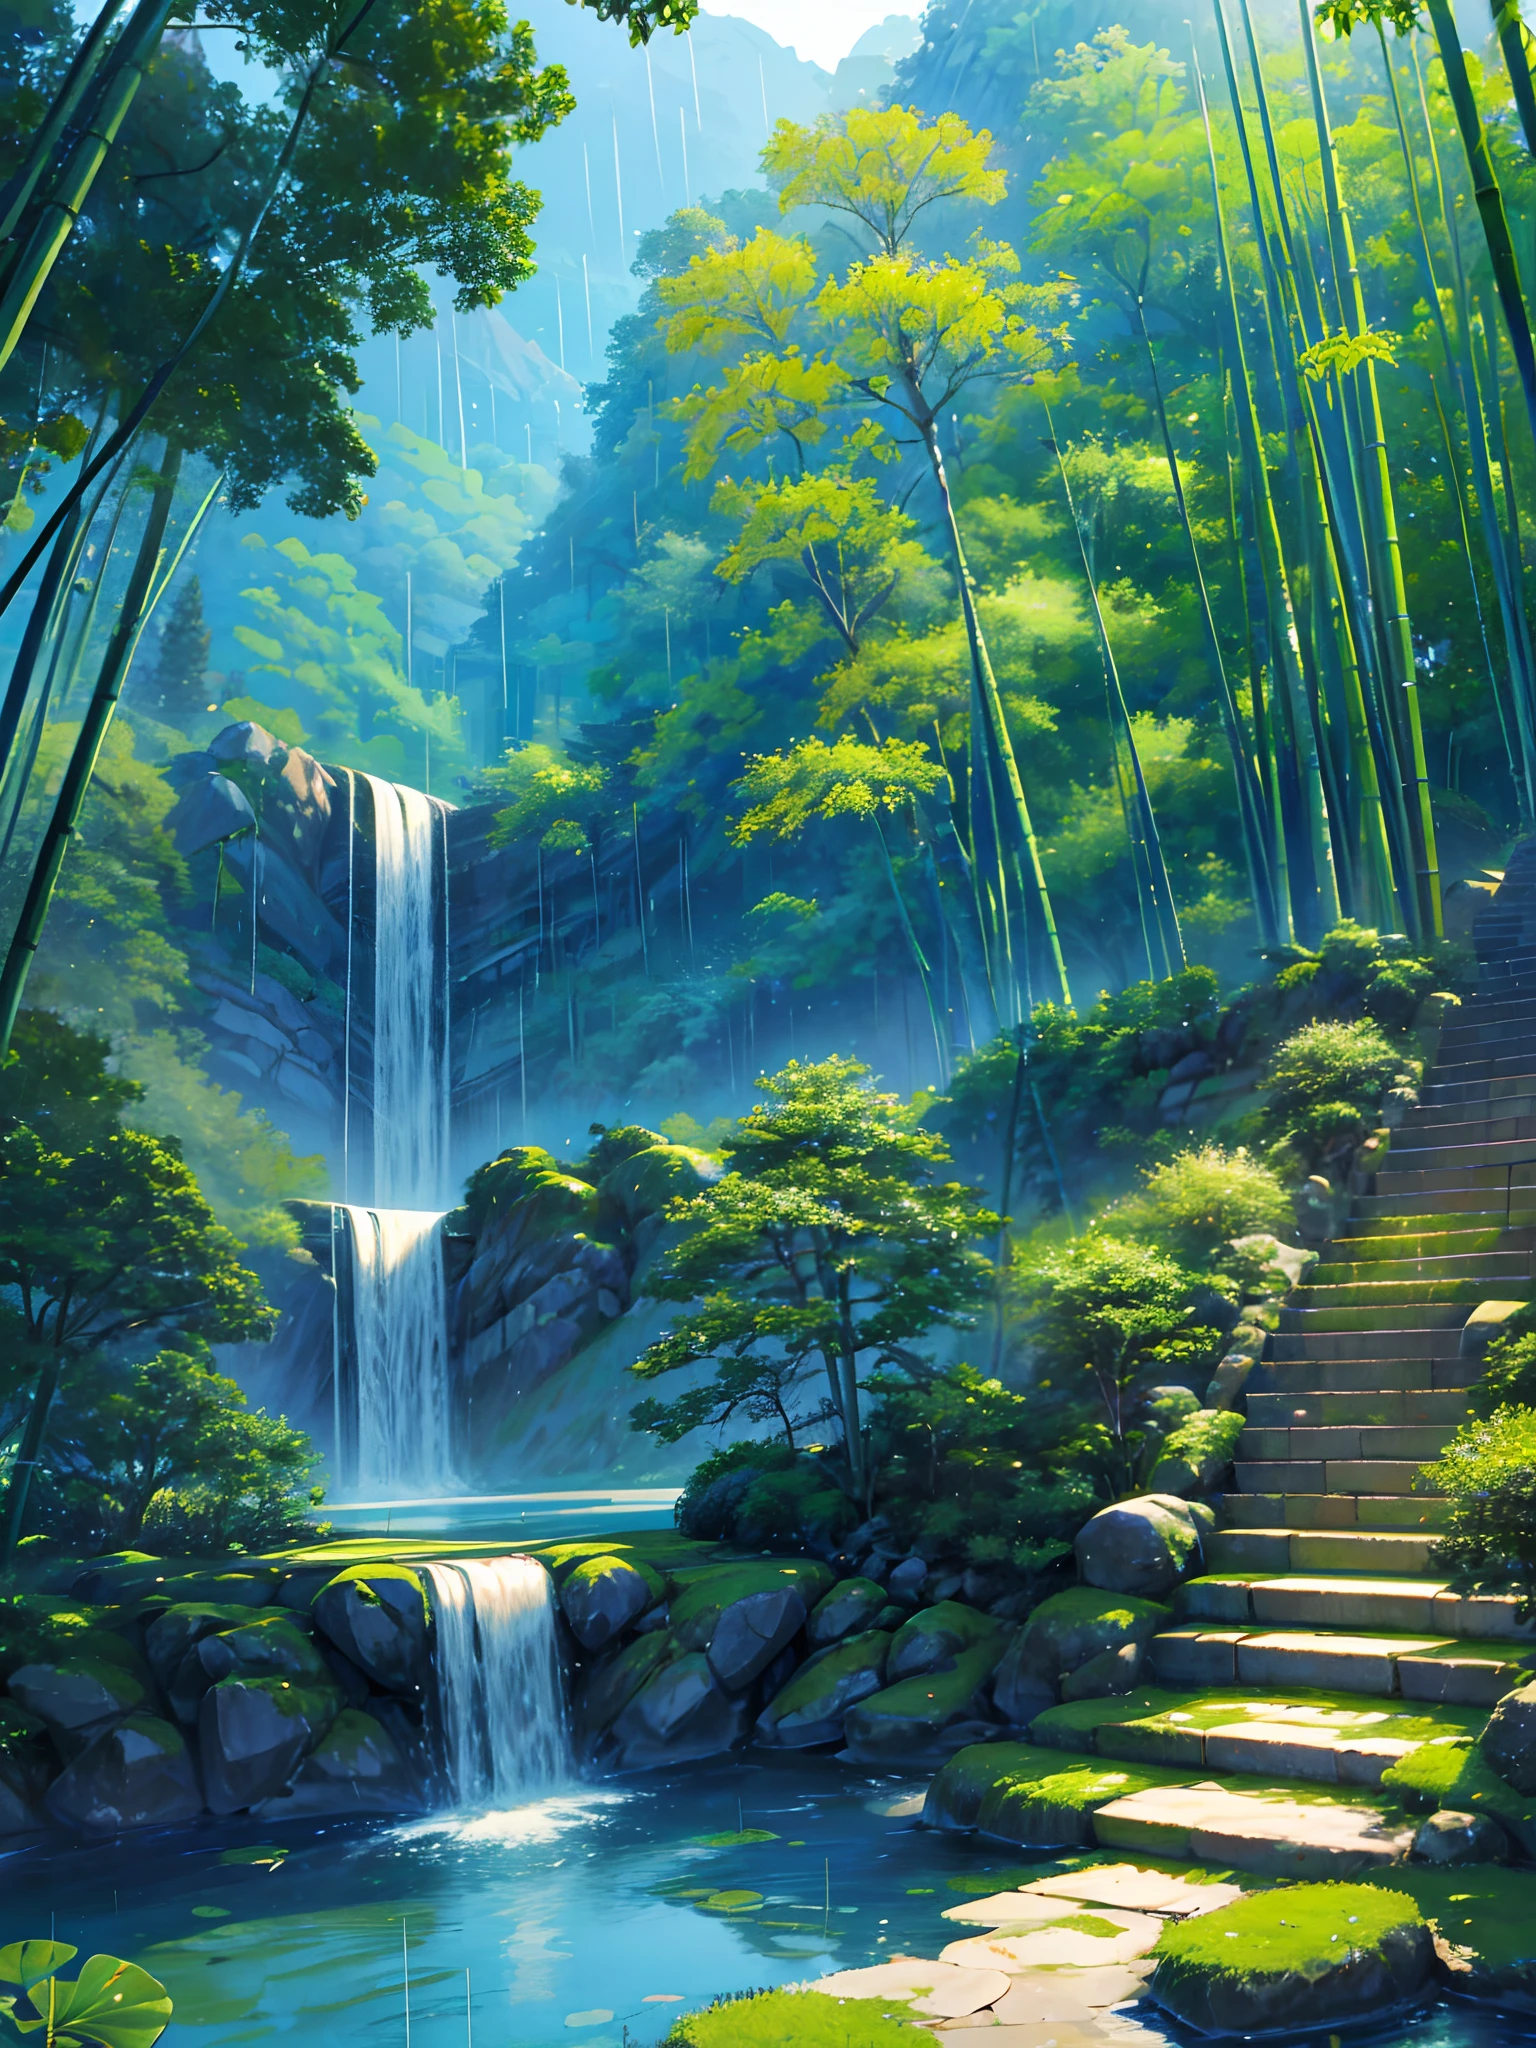 Vista pura del paisaje、bosque de bambú、Estaba lloviendo en el bosque de bambú.、bambúes、Las hojas de bambú caen por todas partes、Hermosa concepción artística.、precipicio、verde、Los pasos son claramente visibles.、estilo chino、caracteristicas chinas、loto de estanque